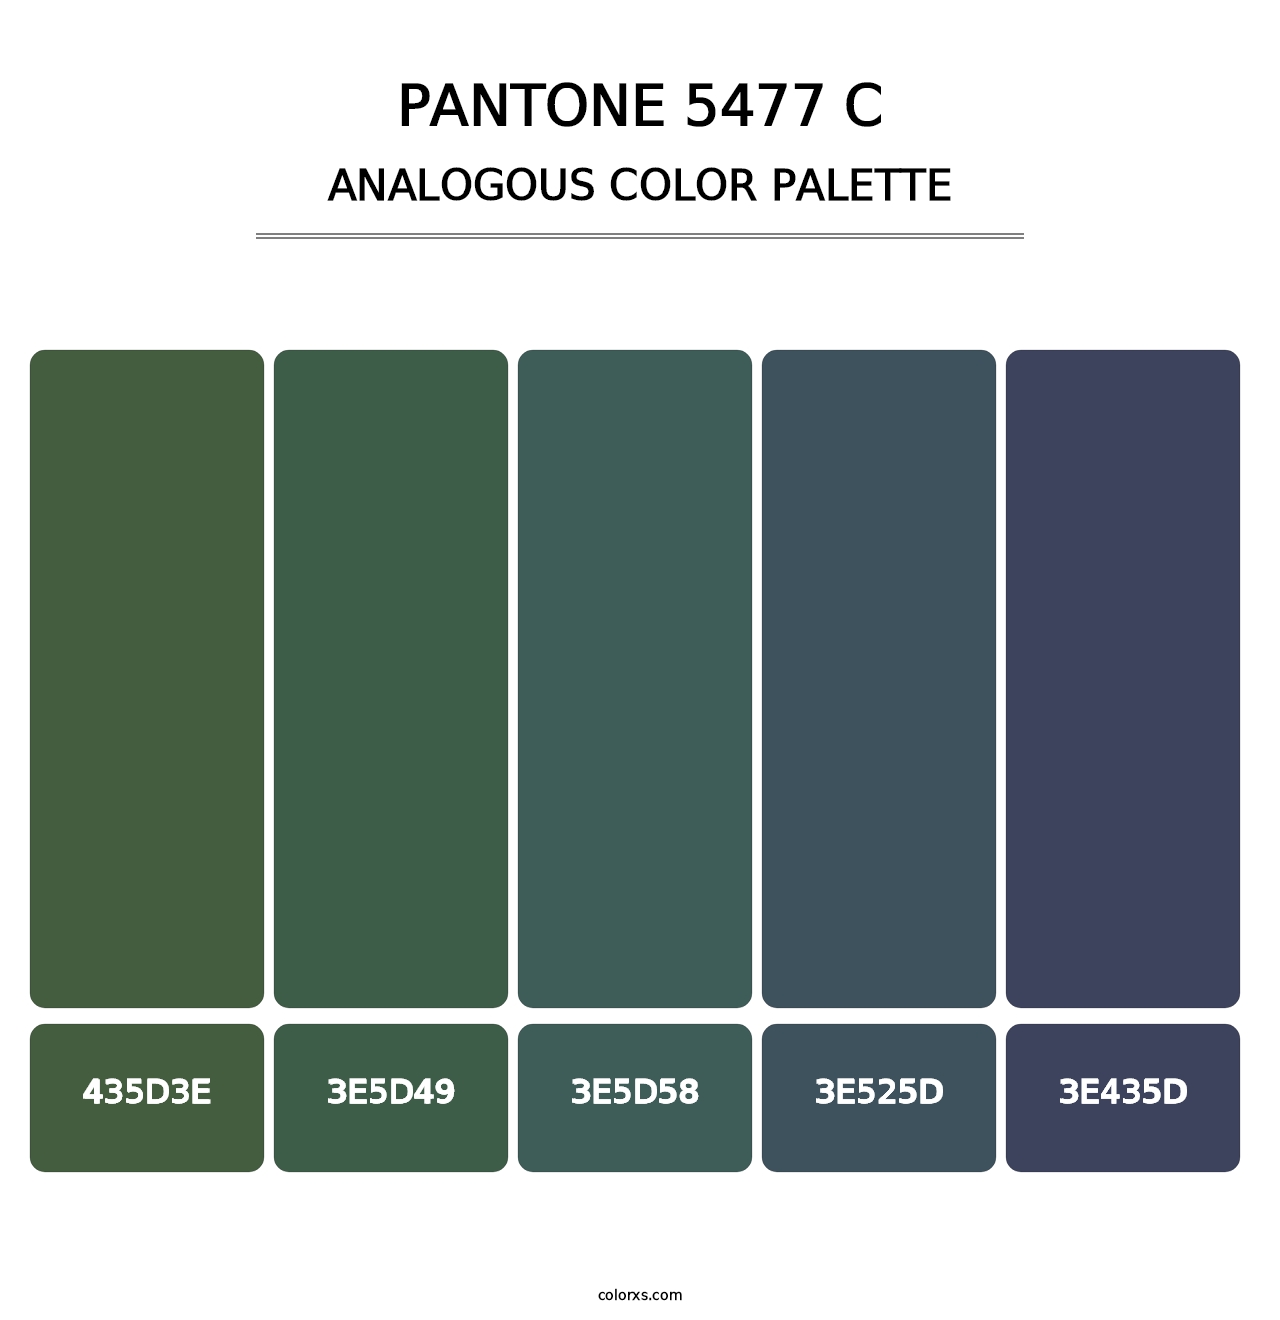 PANTONE 5477 C - Analogous Color Palette